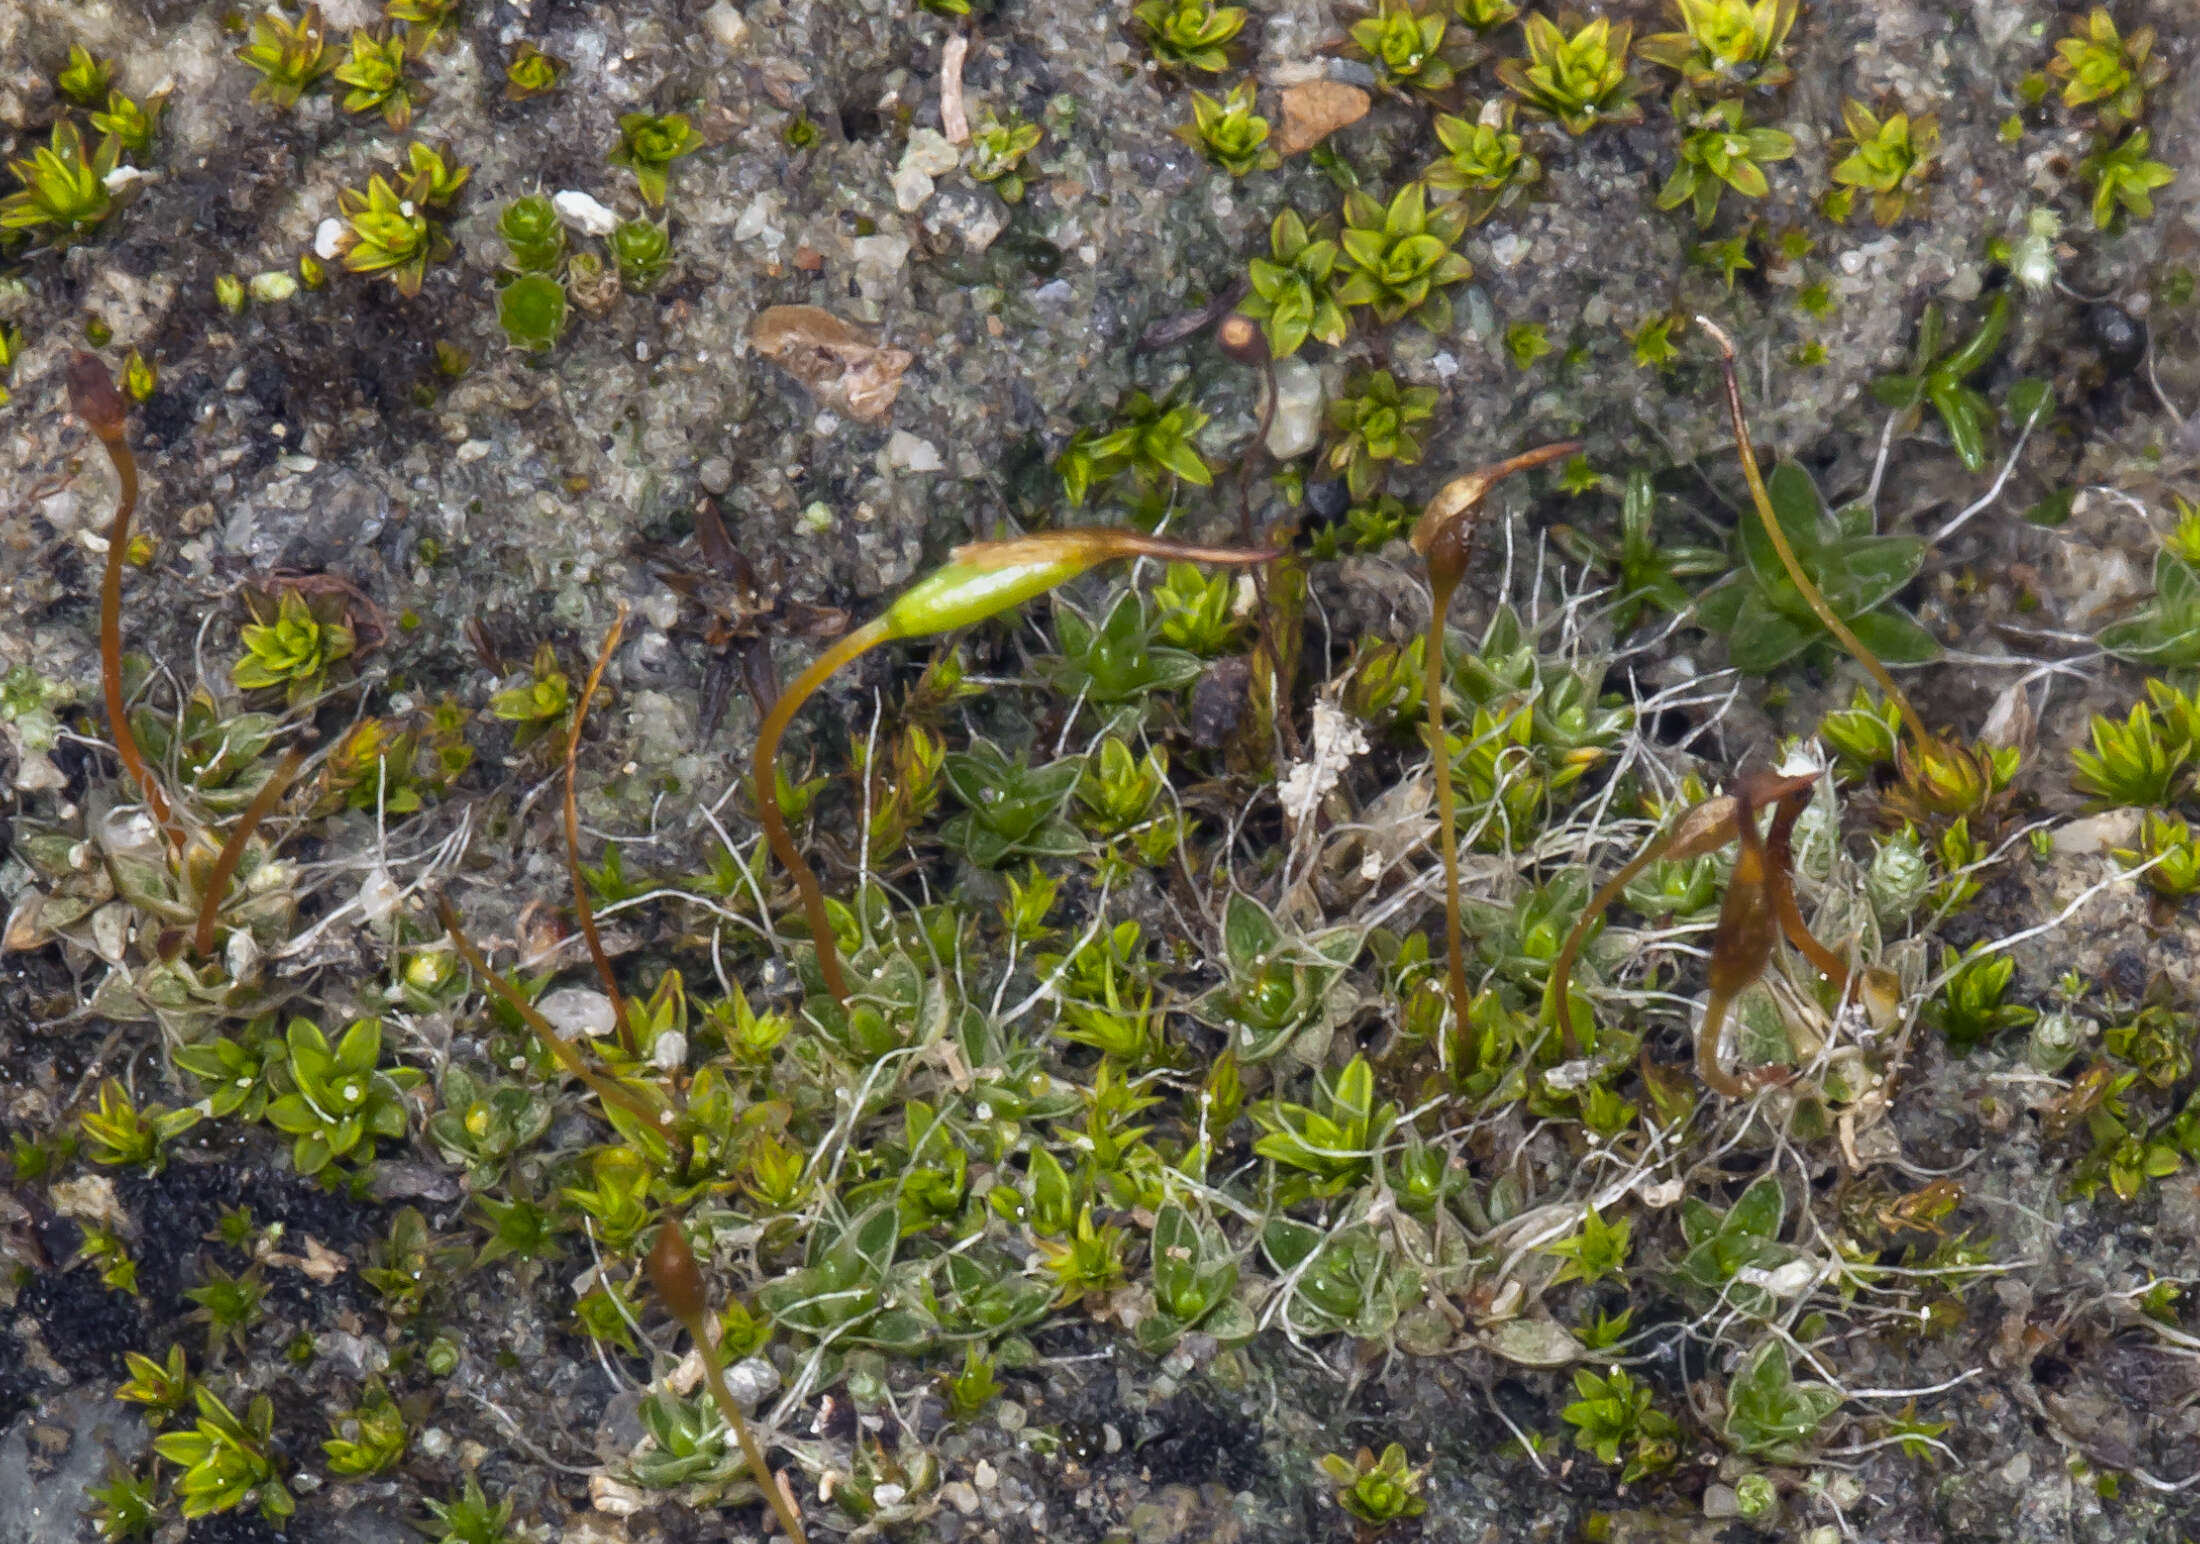 Image of silvergreen bryum moss